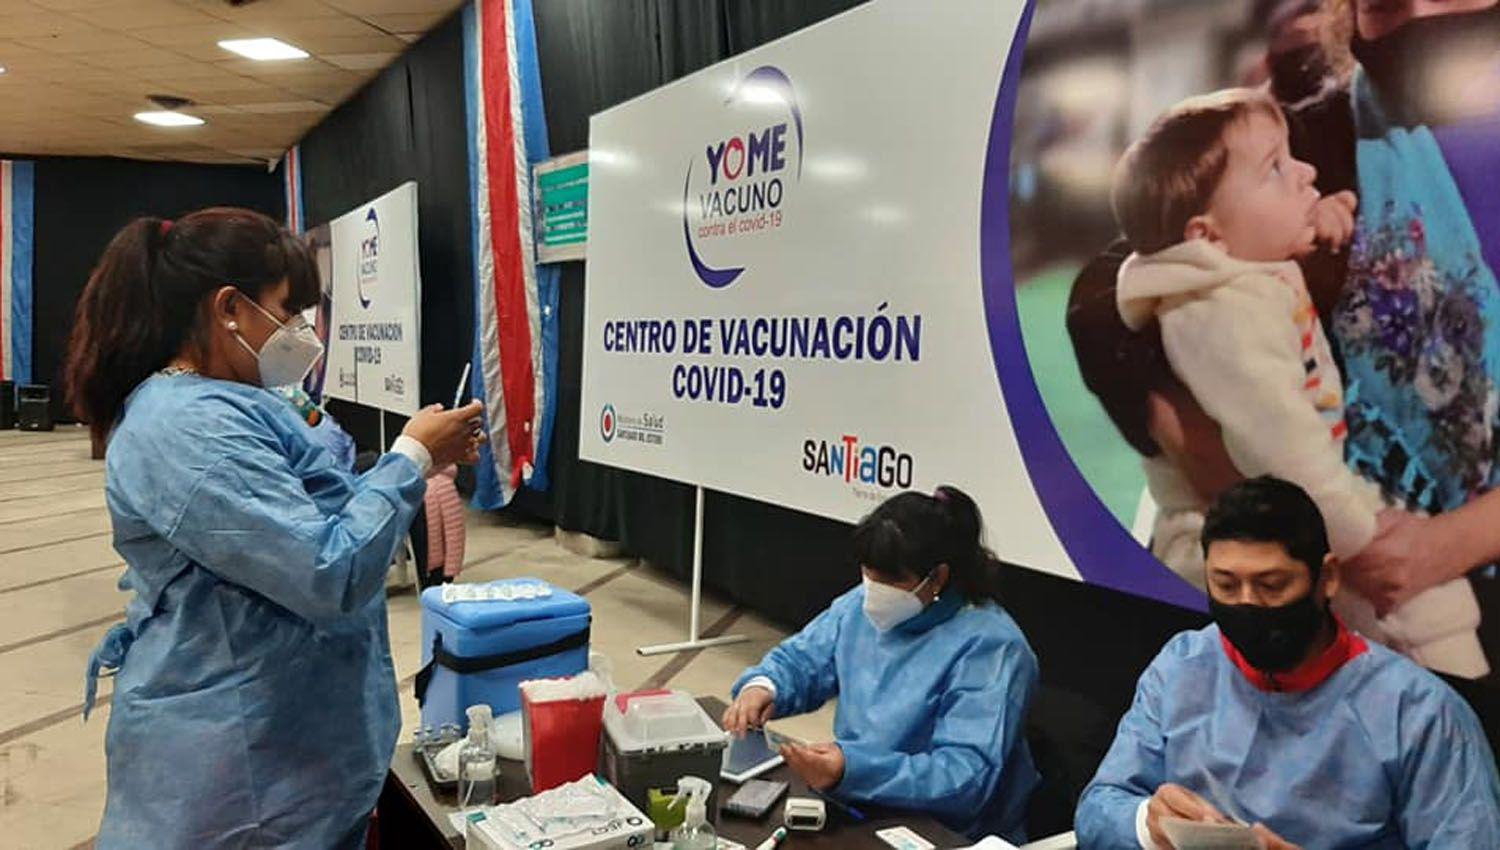 Vacunacioacuten- Santiago entre las provincias con mayor cantidad de dosis aplicadas en julio